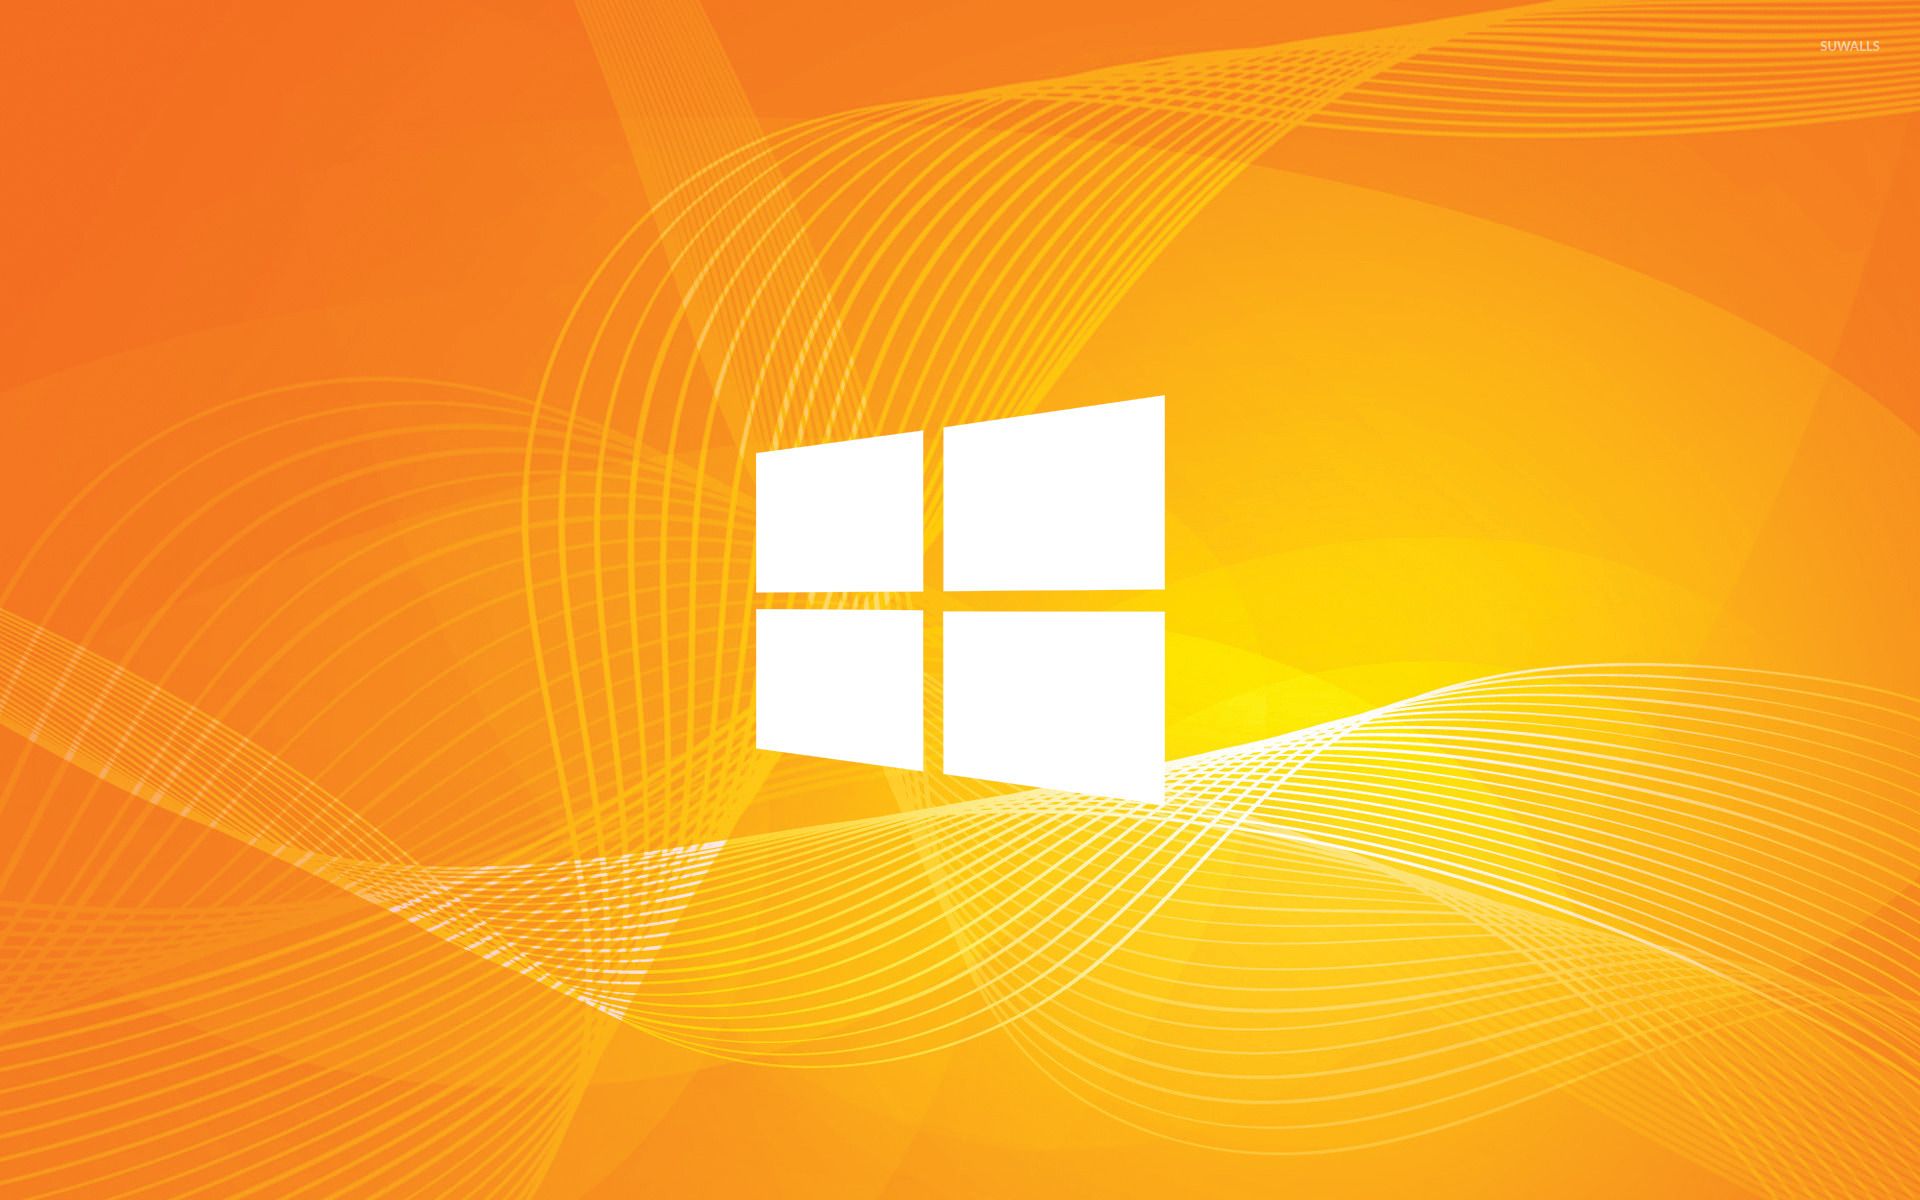 Hình nền Windows màu cam và đen trên WallpaperDog: Nếu bạn đang tìm kiếm hình nền Windows 10 đẹp và độc đáo, thì hình nền màu cam và đen trên WallpaperDog là lựa chọn tuyệt vời cho bạn. Trang trí màn hình của bạn với những gam màu độc đáo cùng với hình ảnh đẹp nhất.